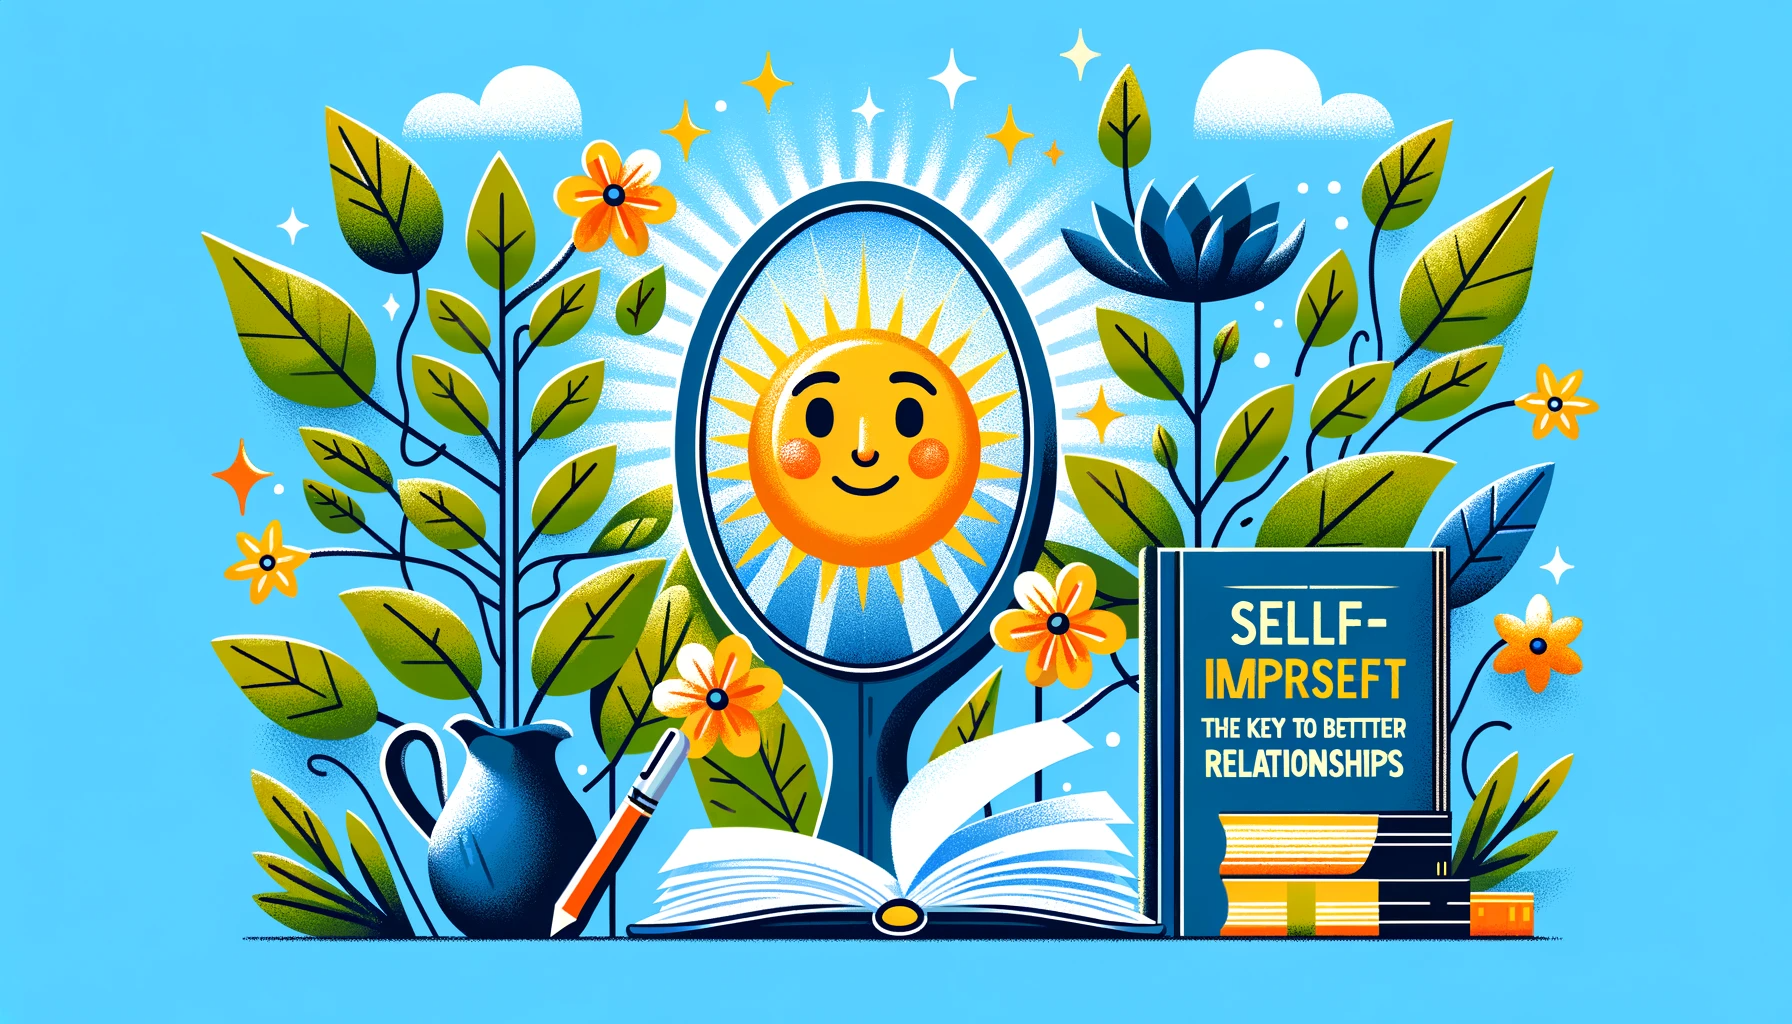 Samorozwój: Klucz do Lepszych Relacji' z elementami jak lustro odbijające szczęśliwą twarz, kwitnąca roślina, czy otwarta książka, symbolizujące samoświadomość, wzrost i naukę, w jasnych, optymistycznych kolorach niebieskim, zielonym i żółtym